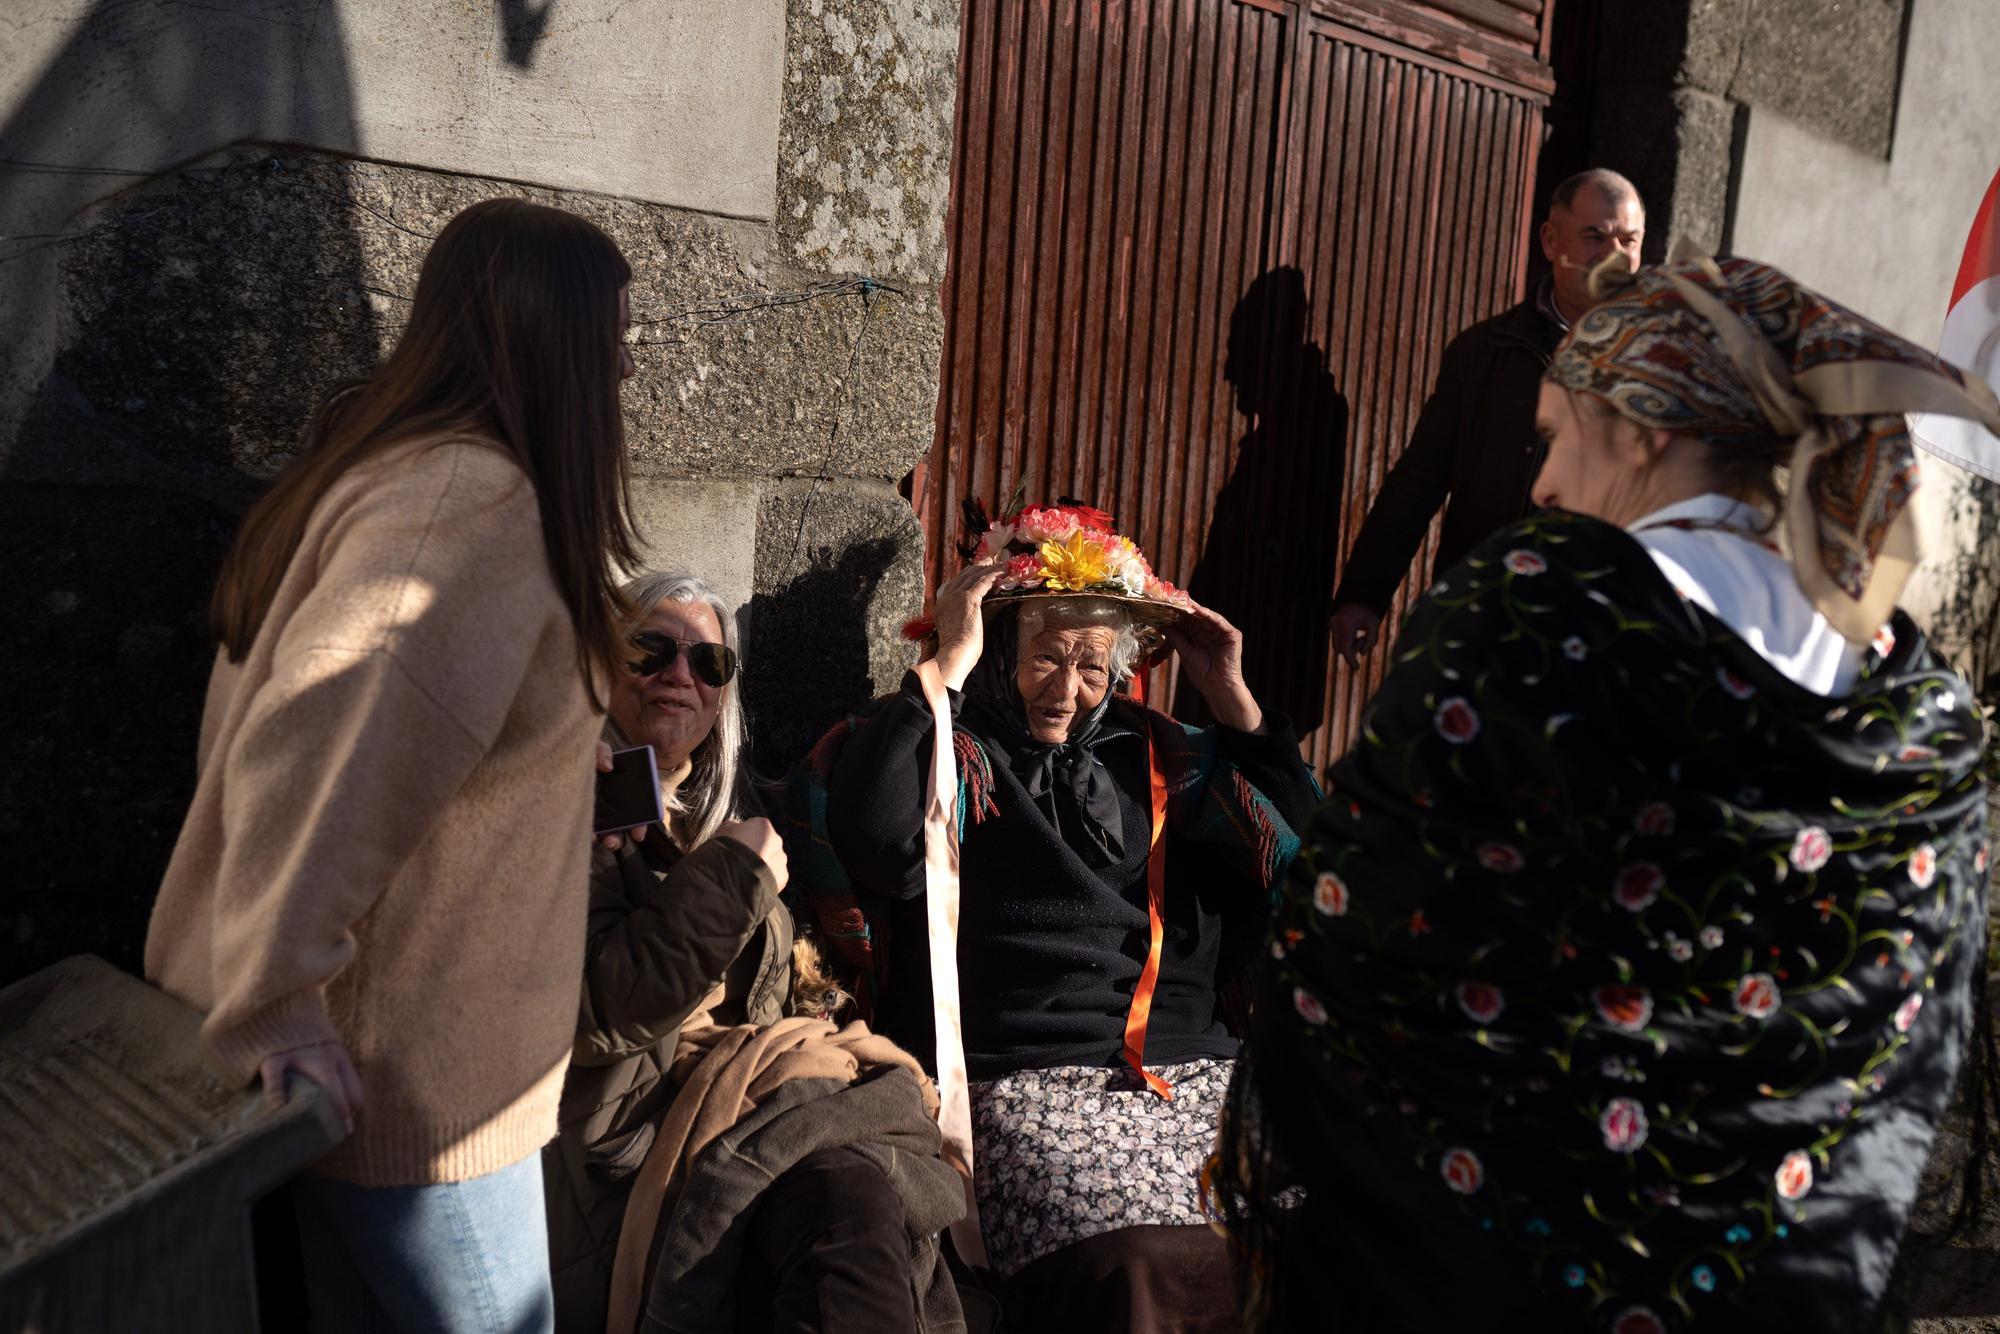 GALERÍA | Las mejores imágenes del III Encuentro de Ritos Ancestrales de Bemposta